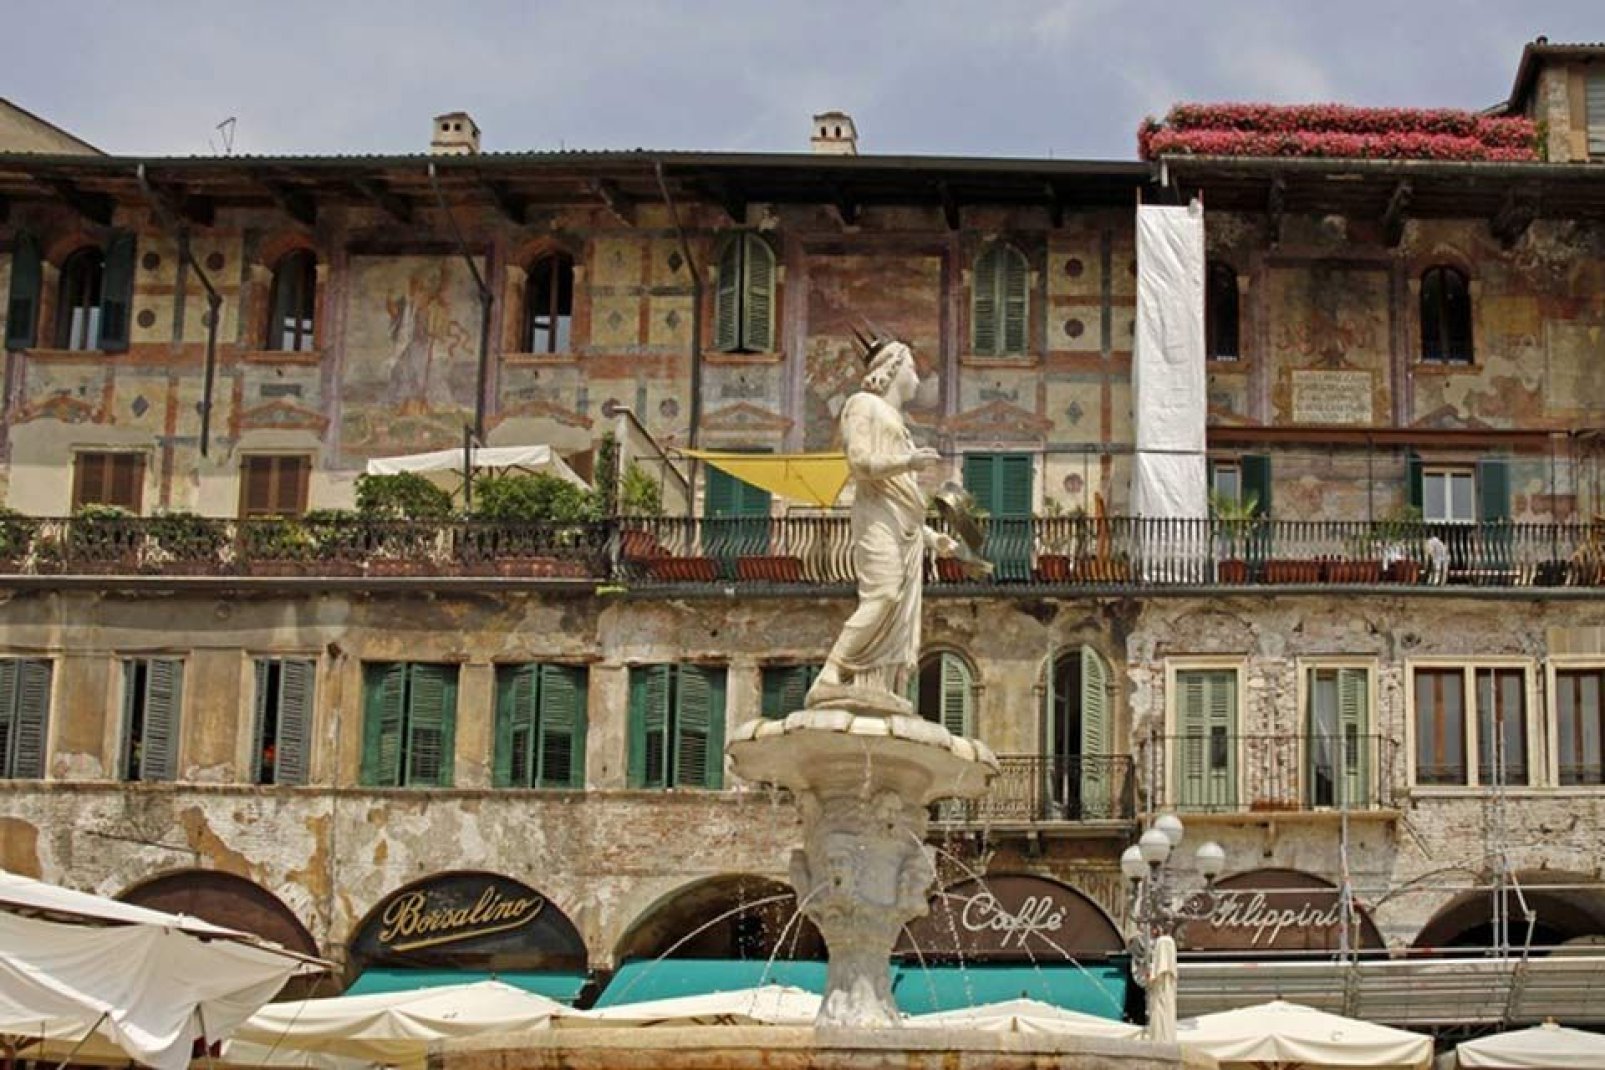 La fontana è il monumento più antico della Piazza delle Erbe. Sulla cima di essa appare una statua di epoca romana, datata 380, soprannominata "Madonna Verona".